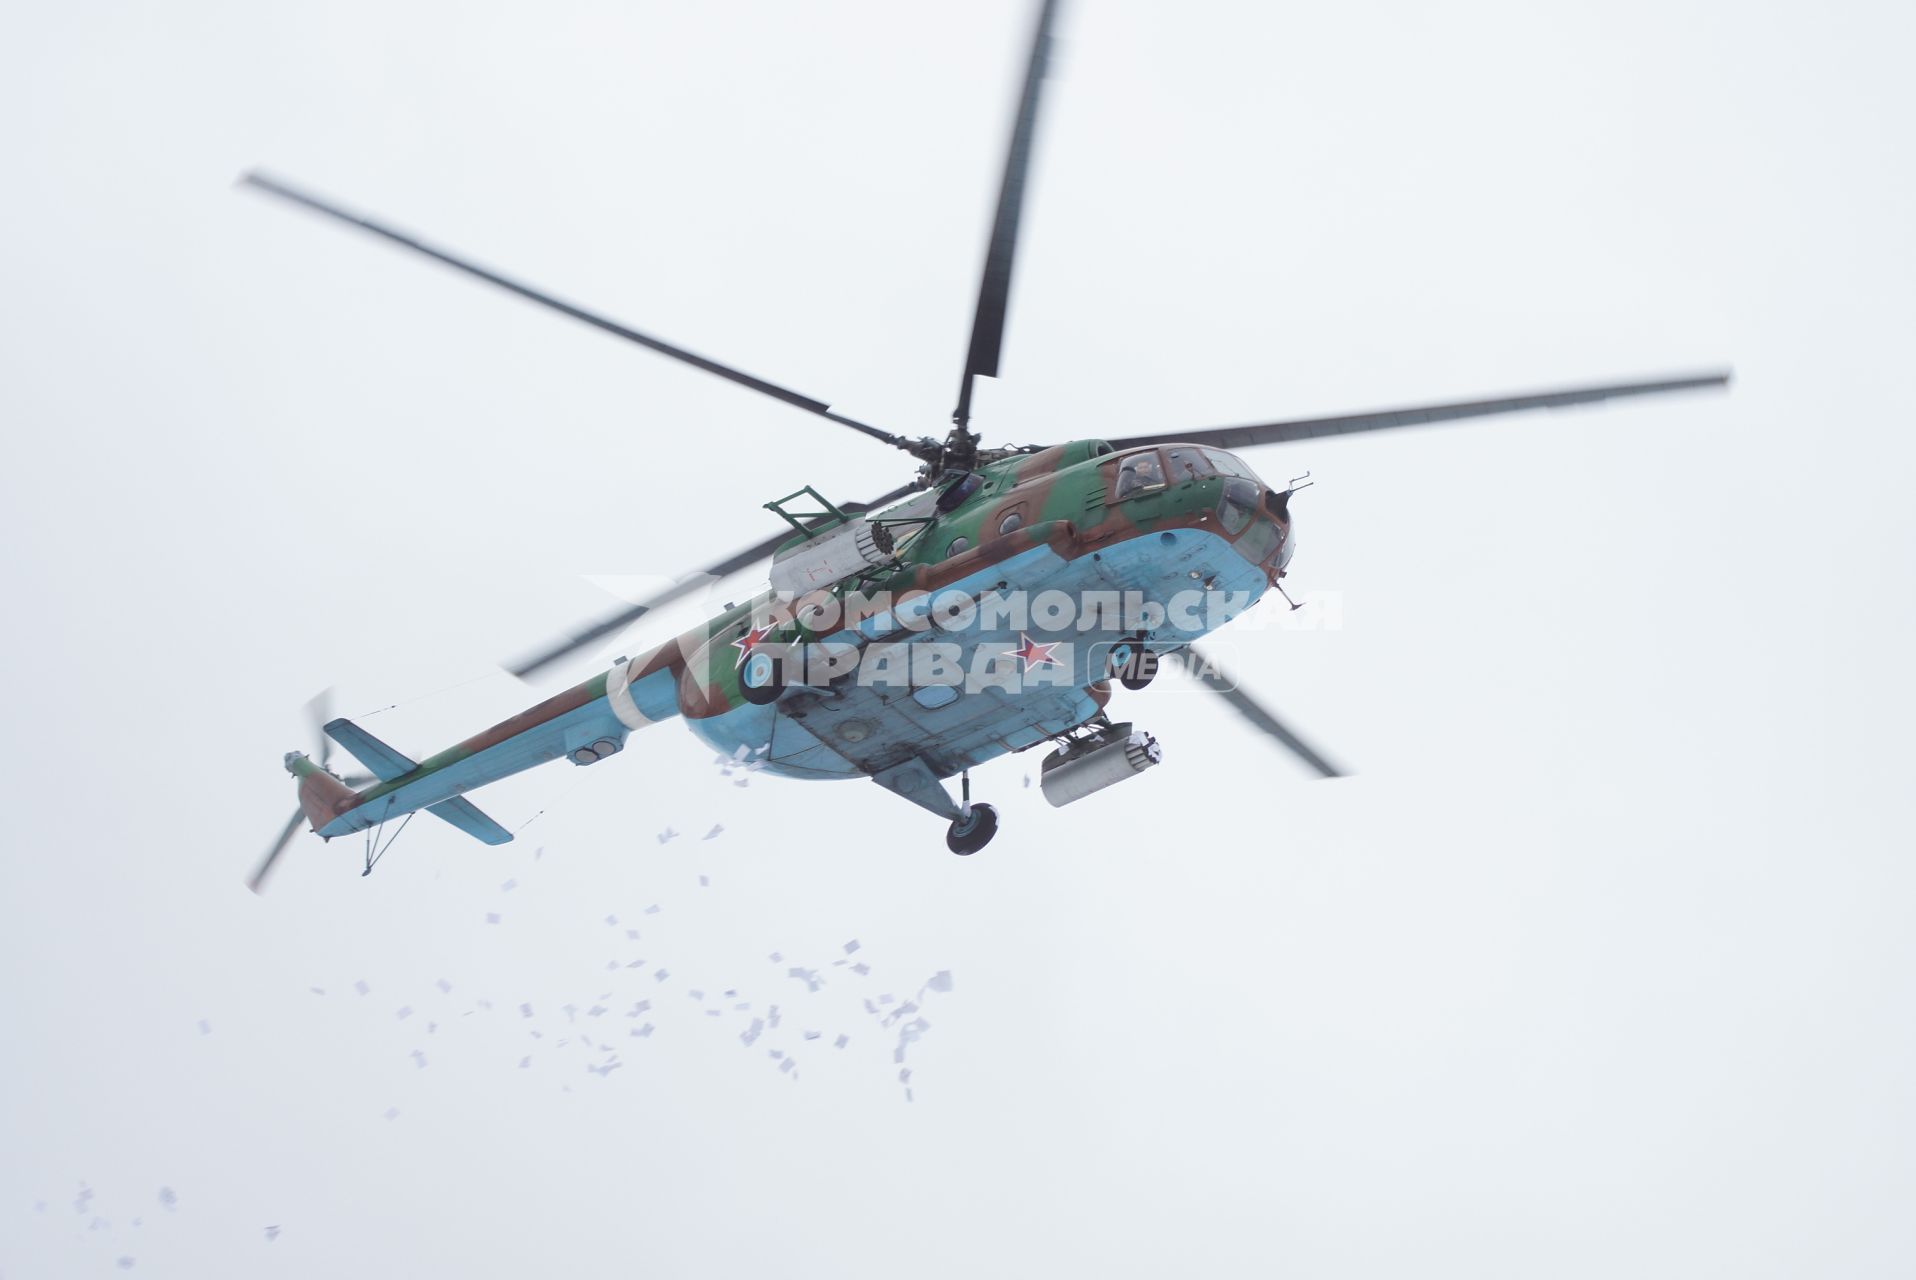 Учения Внутренних войск. вертолет сбрасывает листовки с призыво к демонстрантам прекратить незаконный митинг